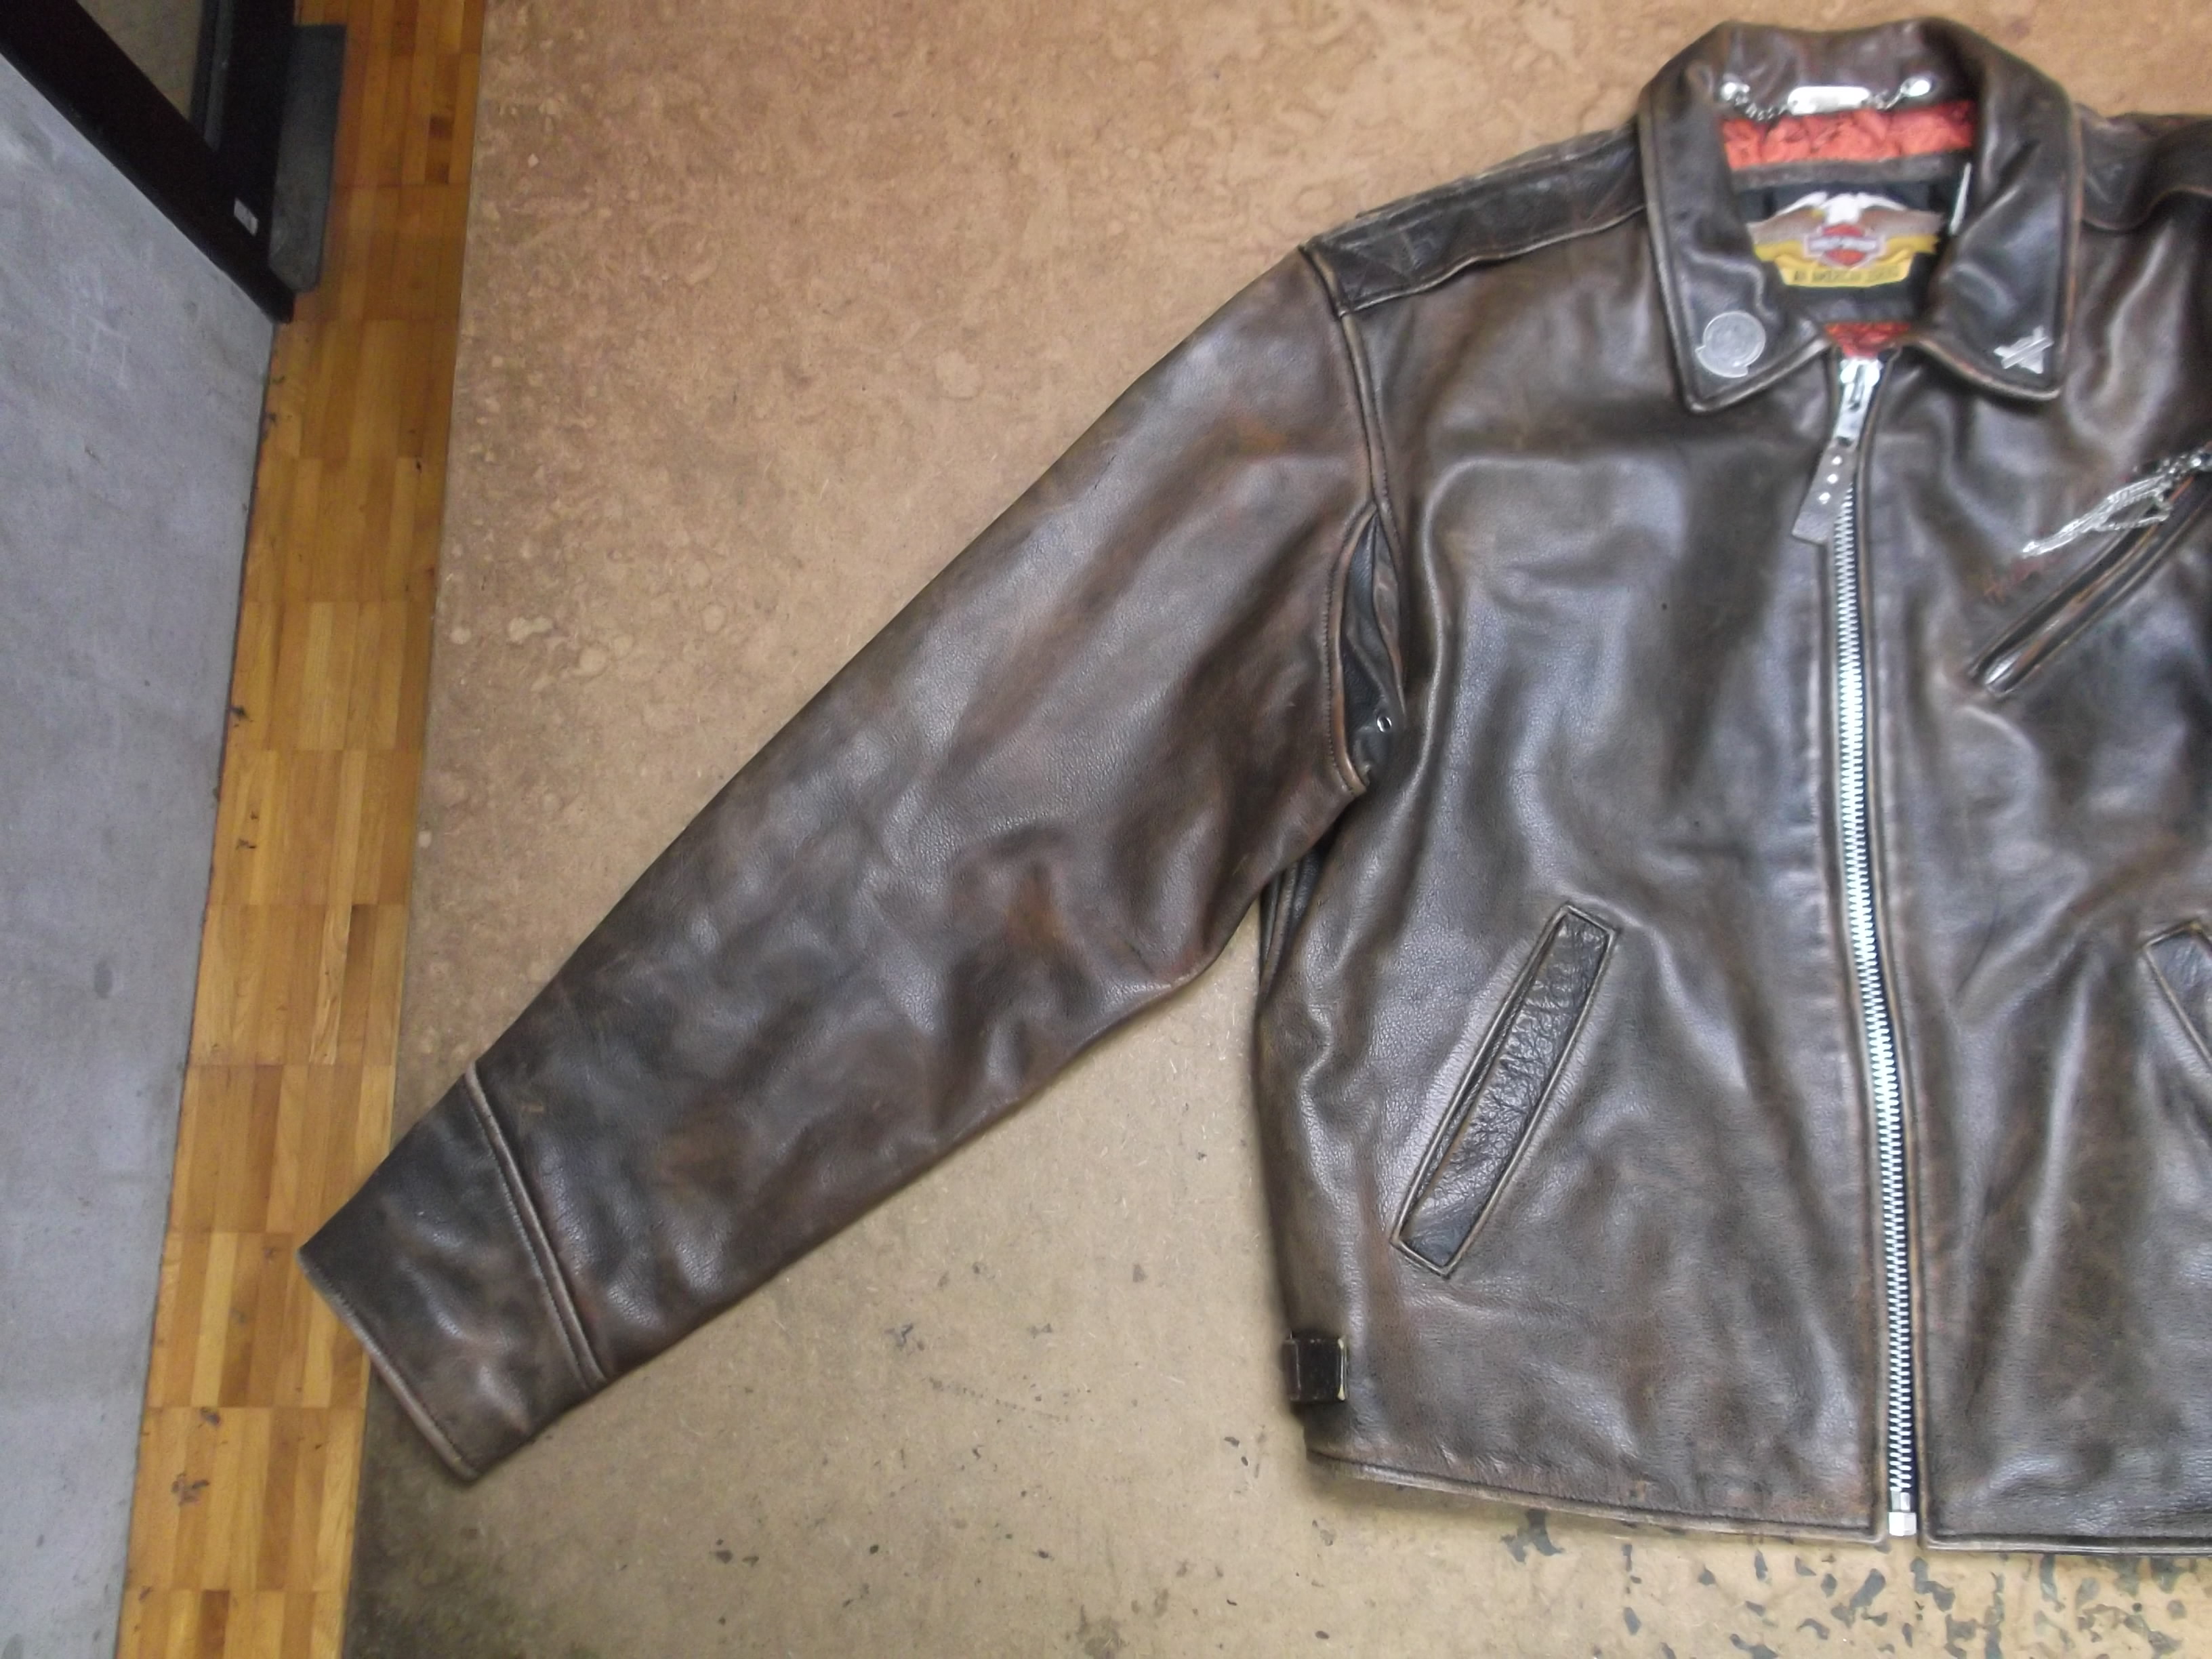 Harley-Davidsonの大きいサイズのレザージャケットを小さくリサイズ 